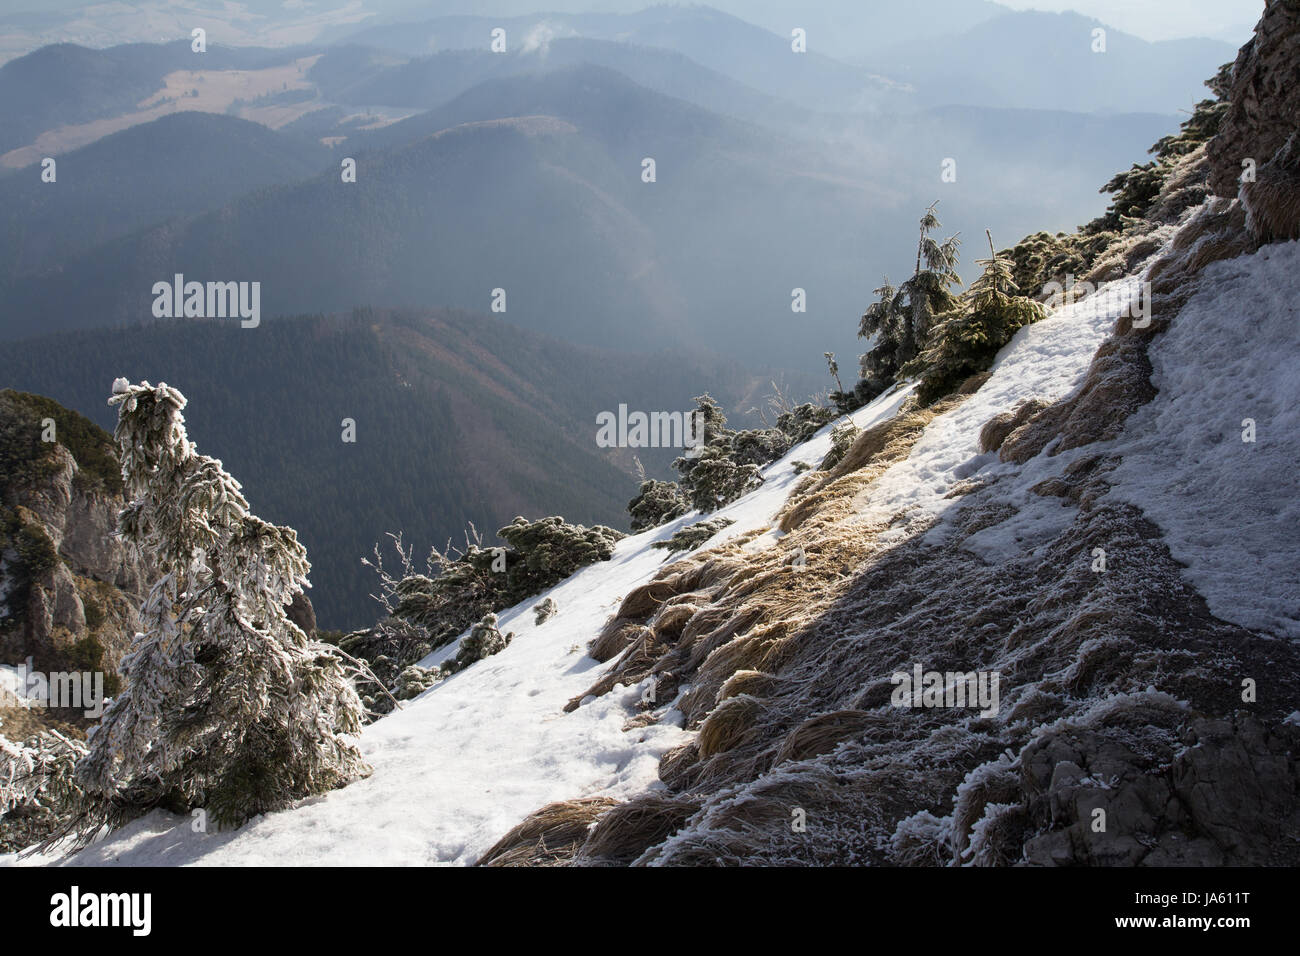 Boscosas escarpadas cubiertas de nieve ladera alpina con vistas a una vista de picos y valles en un pintoresco paisaje de invierno Foto de stock